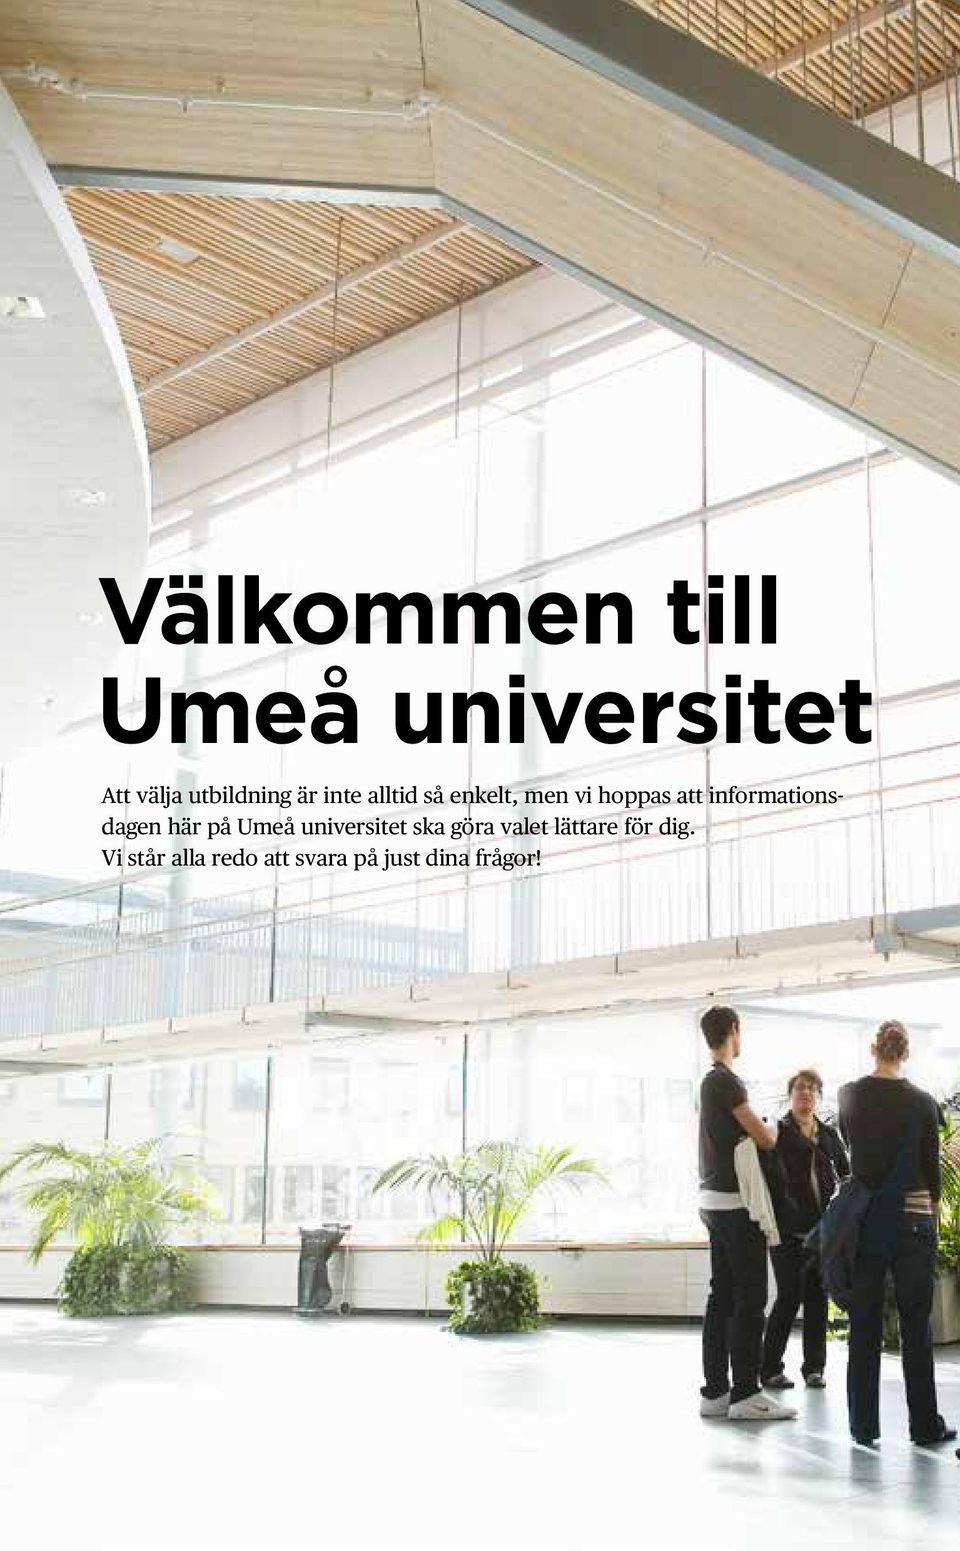 informationsdagen här på Umeå universitet ska göra